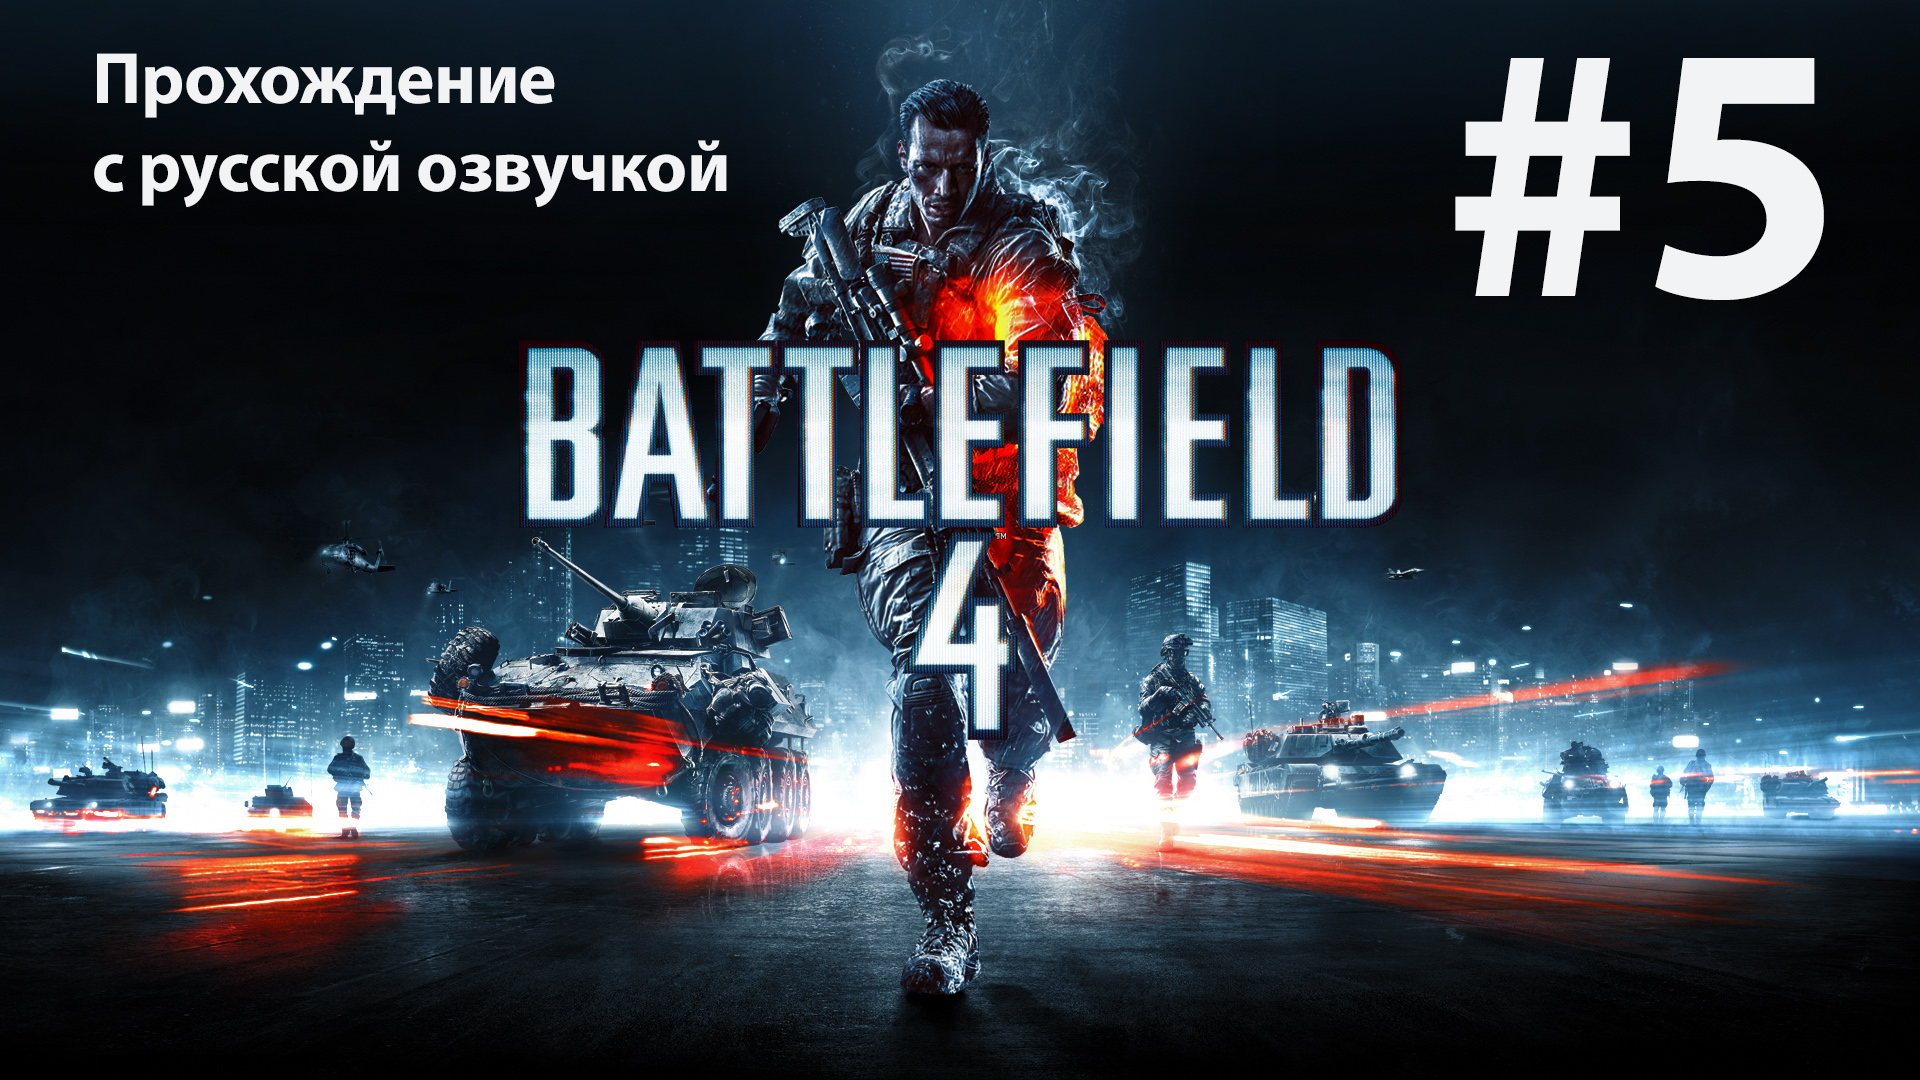 Горы Куньлунь: Игрофильм #5 [Battlefield 4] русская озвучка